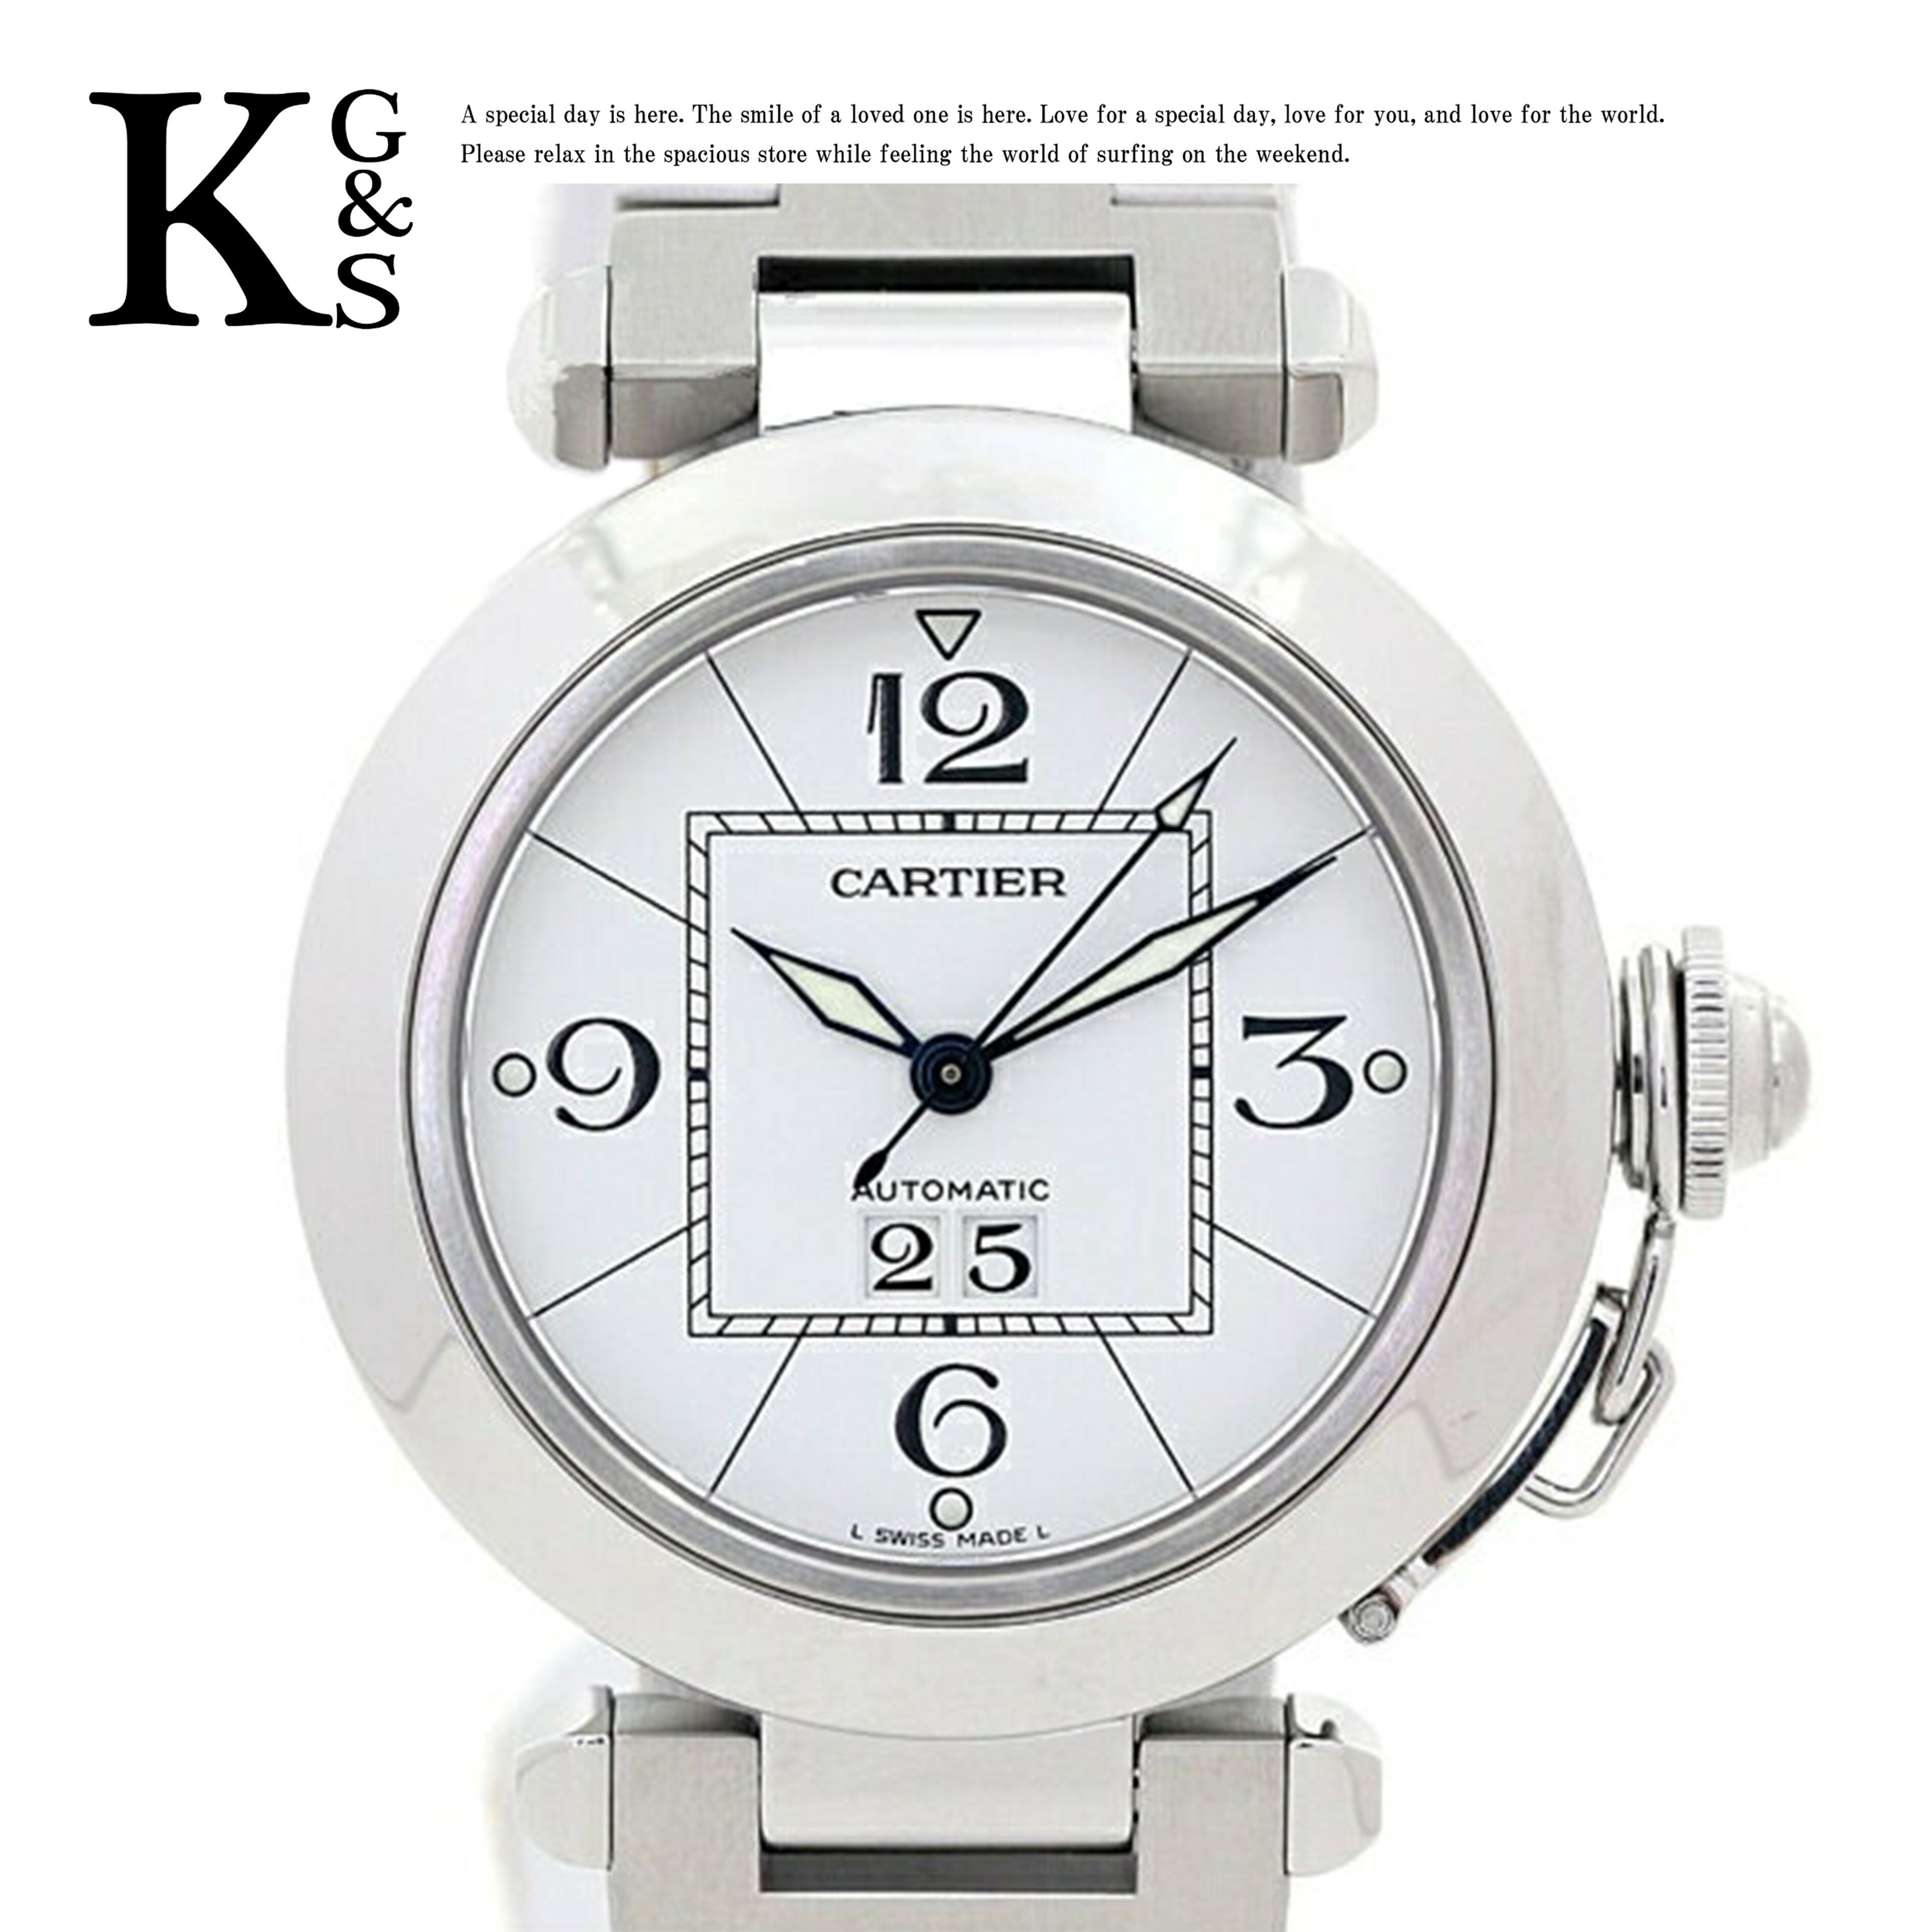 【ギフト品質】カルティエ/Cartier レディース 腕時計 パシャC 35mm ビッグデイト オートマチック 自動巻き ホワイト文字盤×シルバー ステンレススチール W31055M7